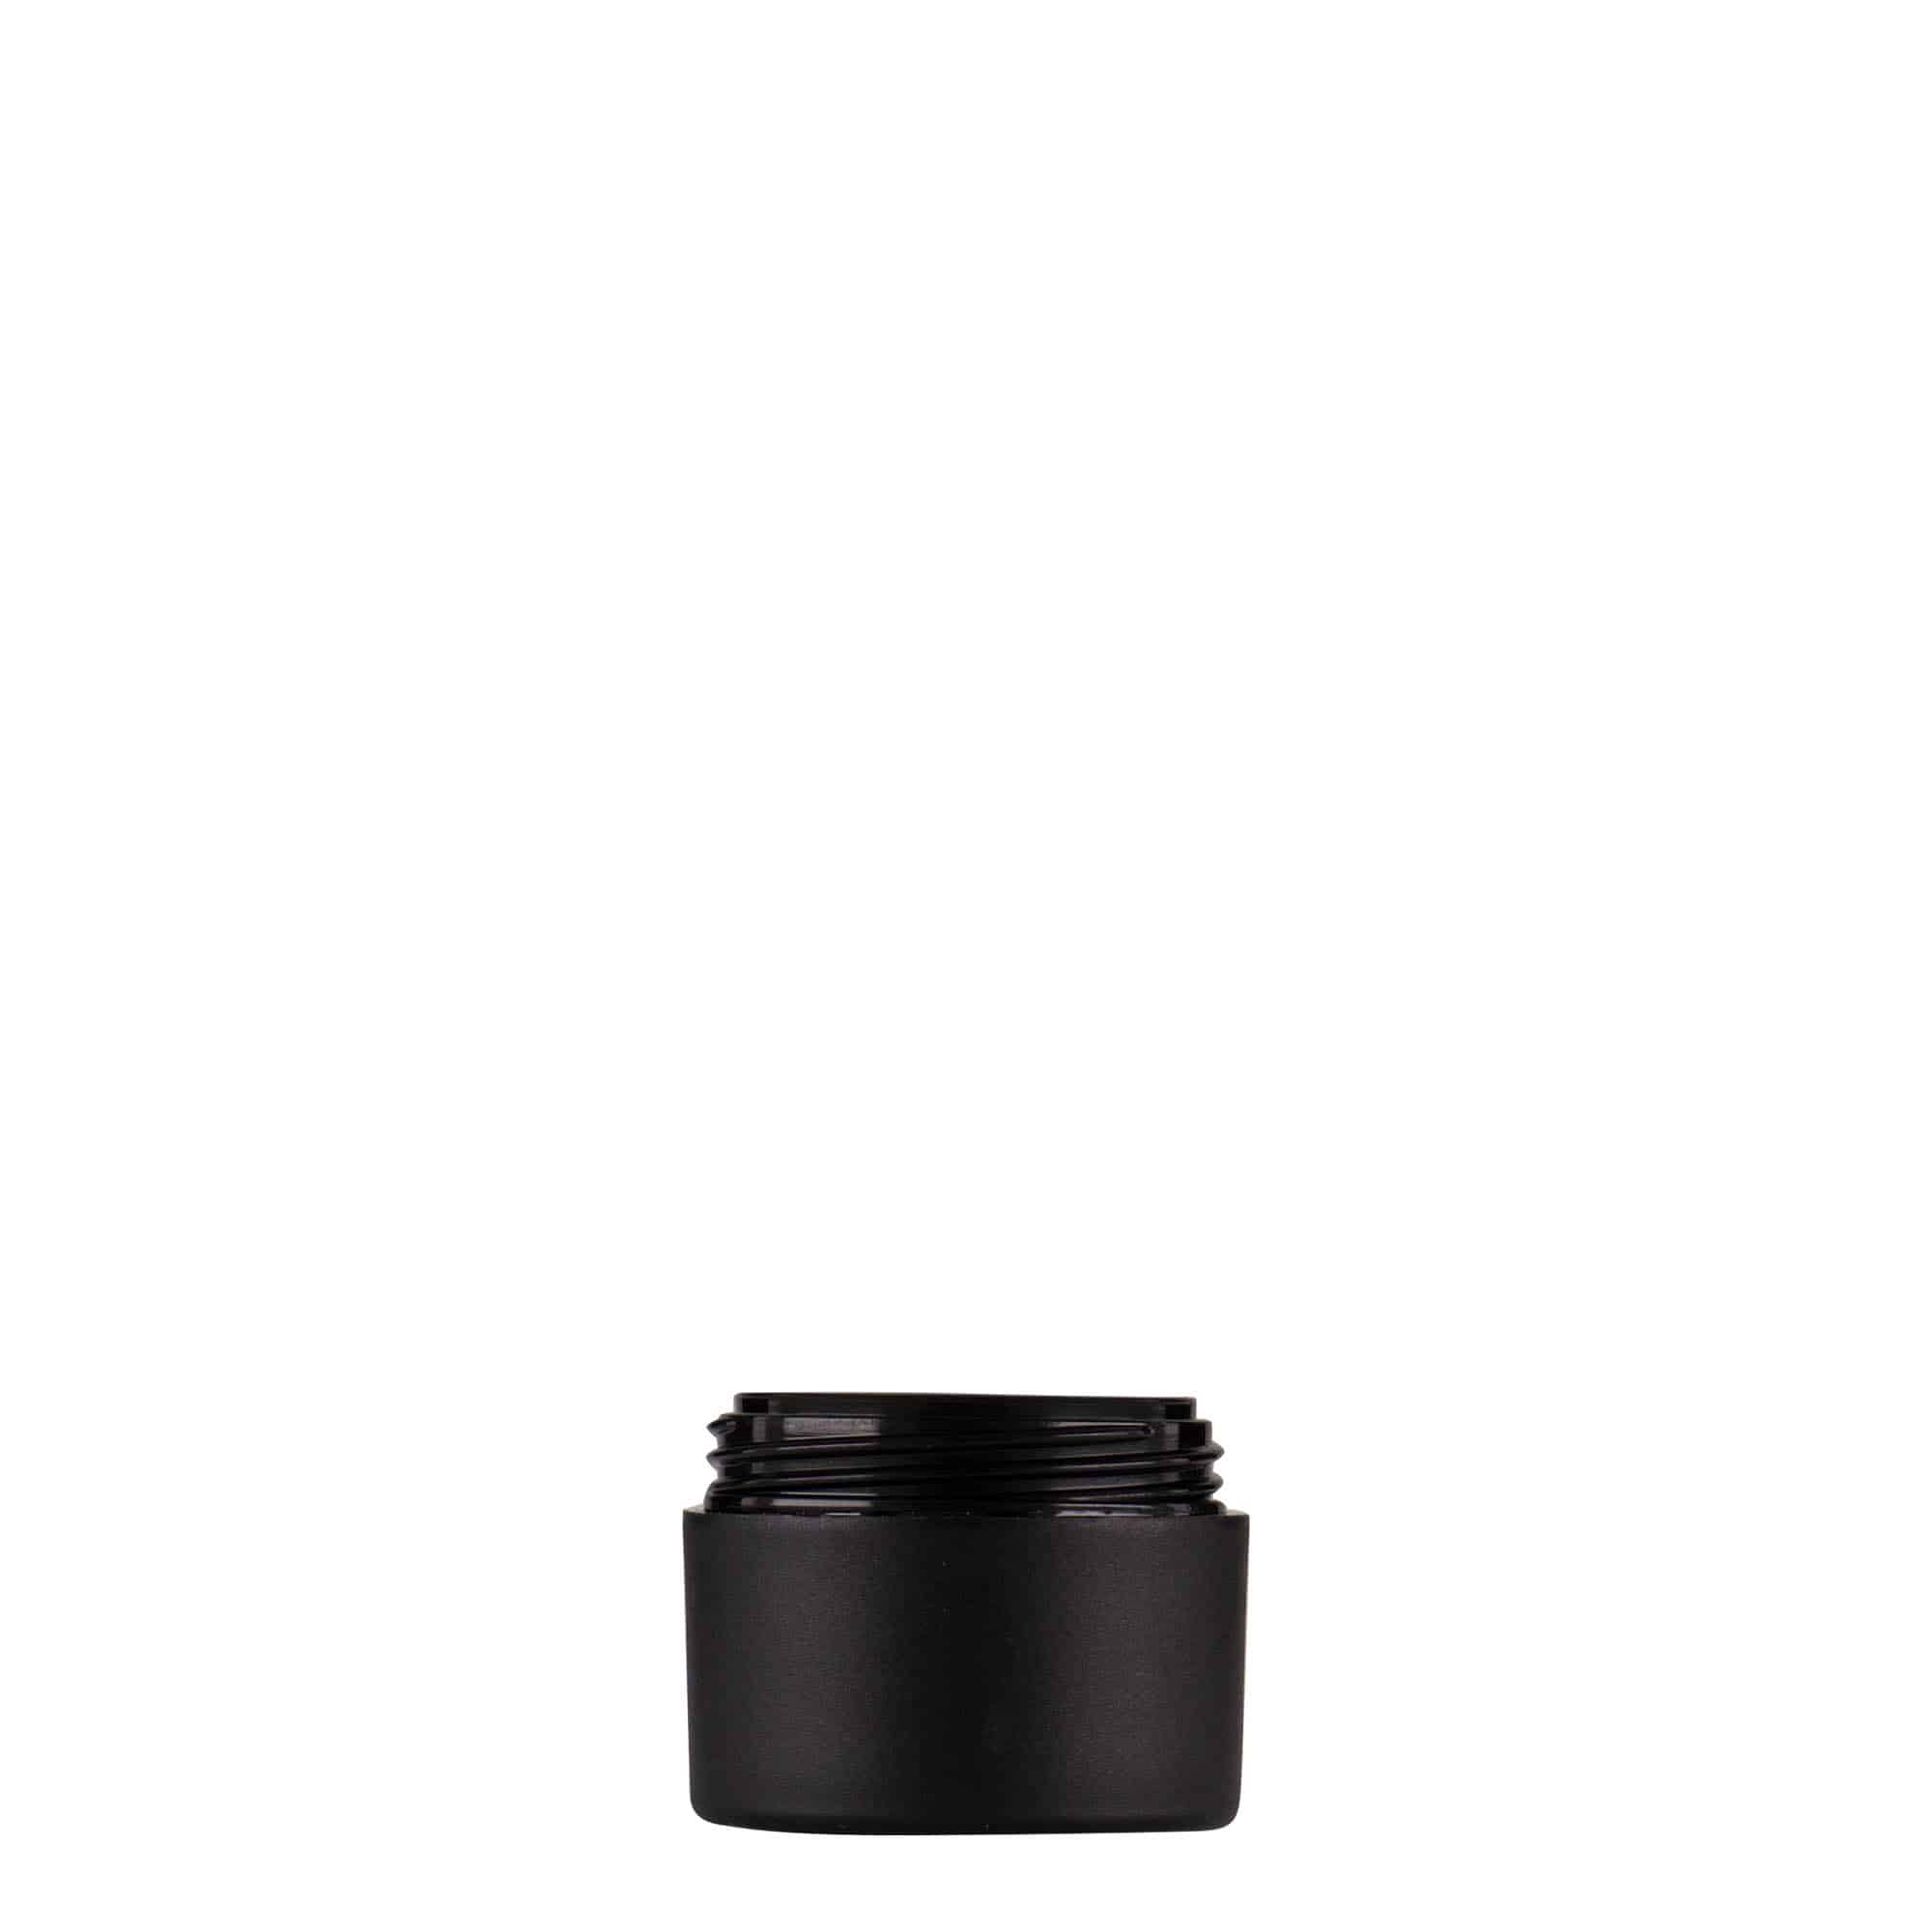 5 ml plastic jar 'Antonella', PP, black, closure: screw cap